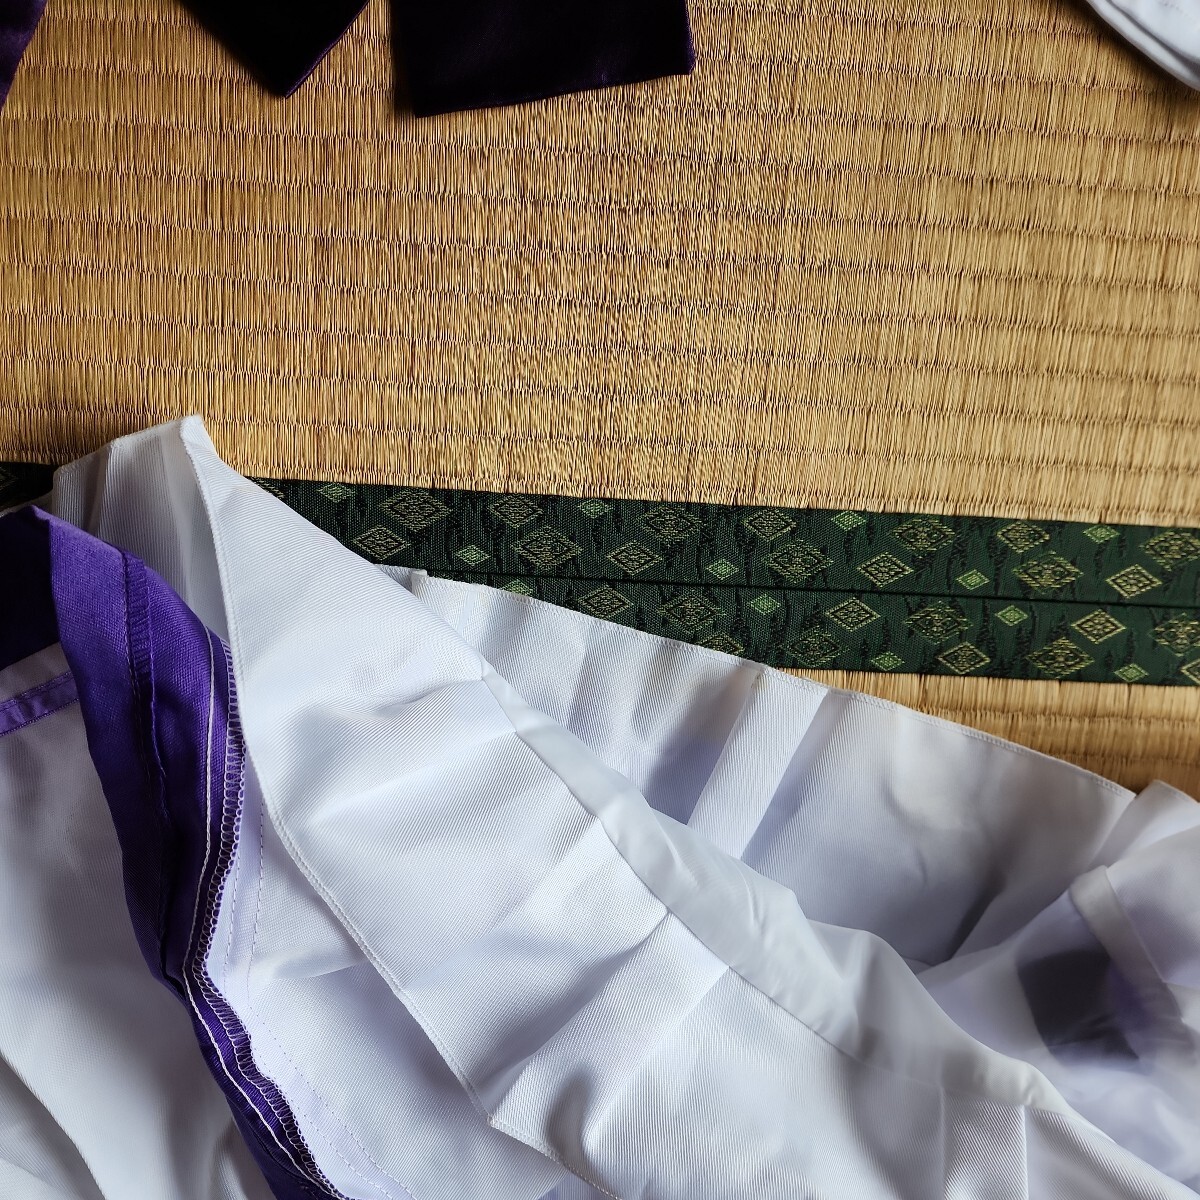  лошадь .pliti Dubey XL размер один иен старт костюмированная игра .. фиолетовый лента. гладкий . ткань, гольфы. мягкий ткань. 